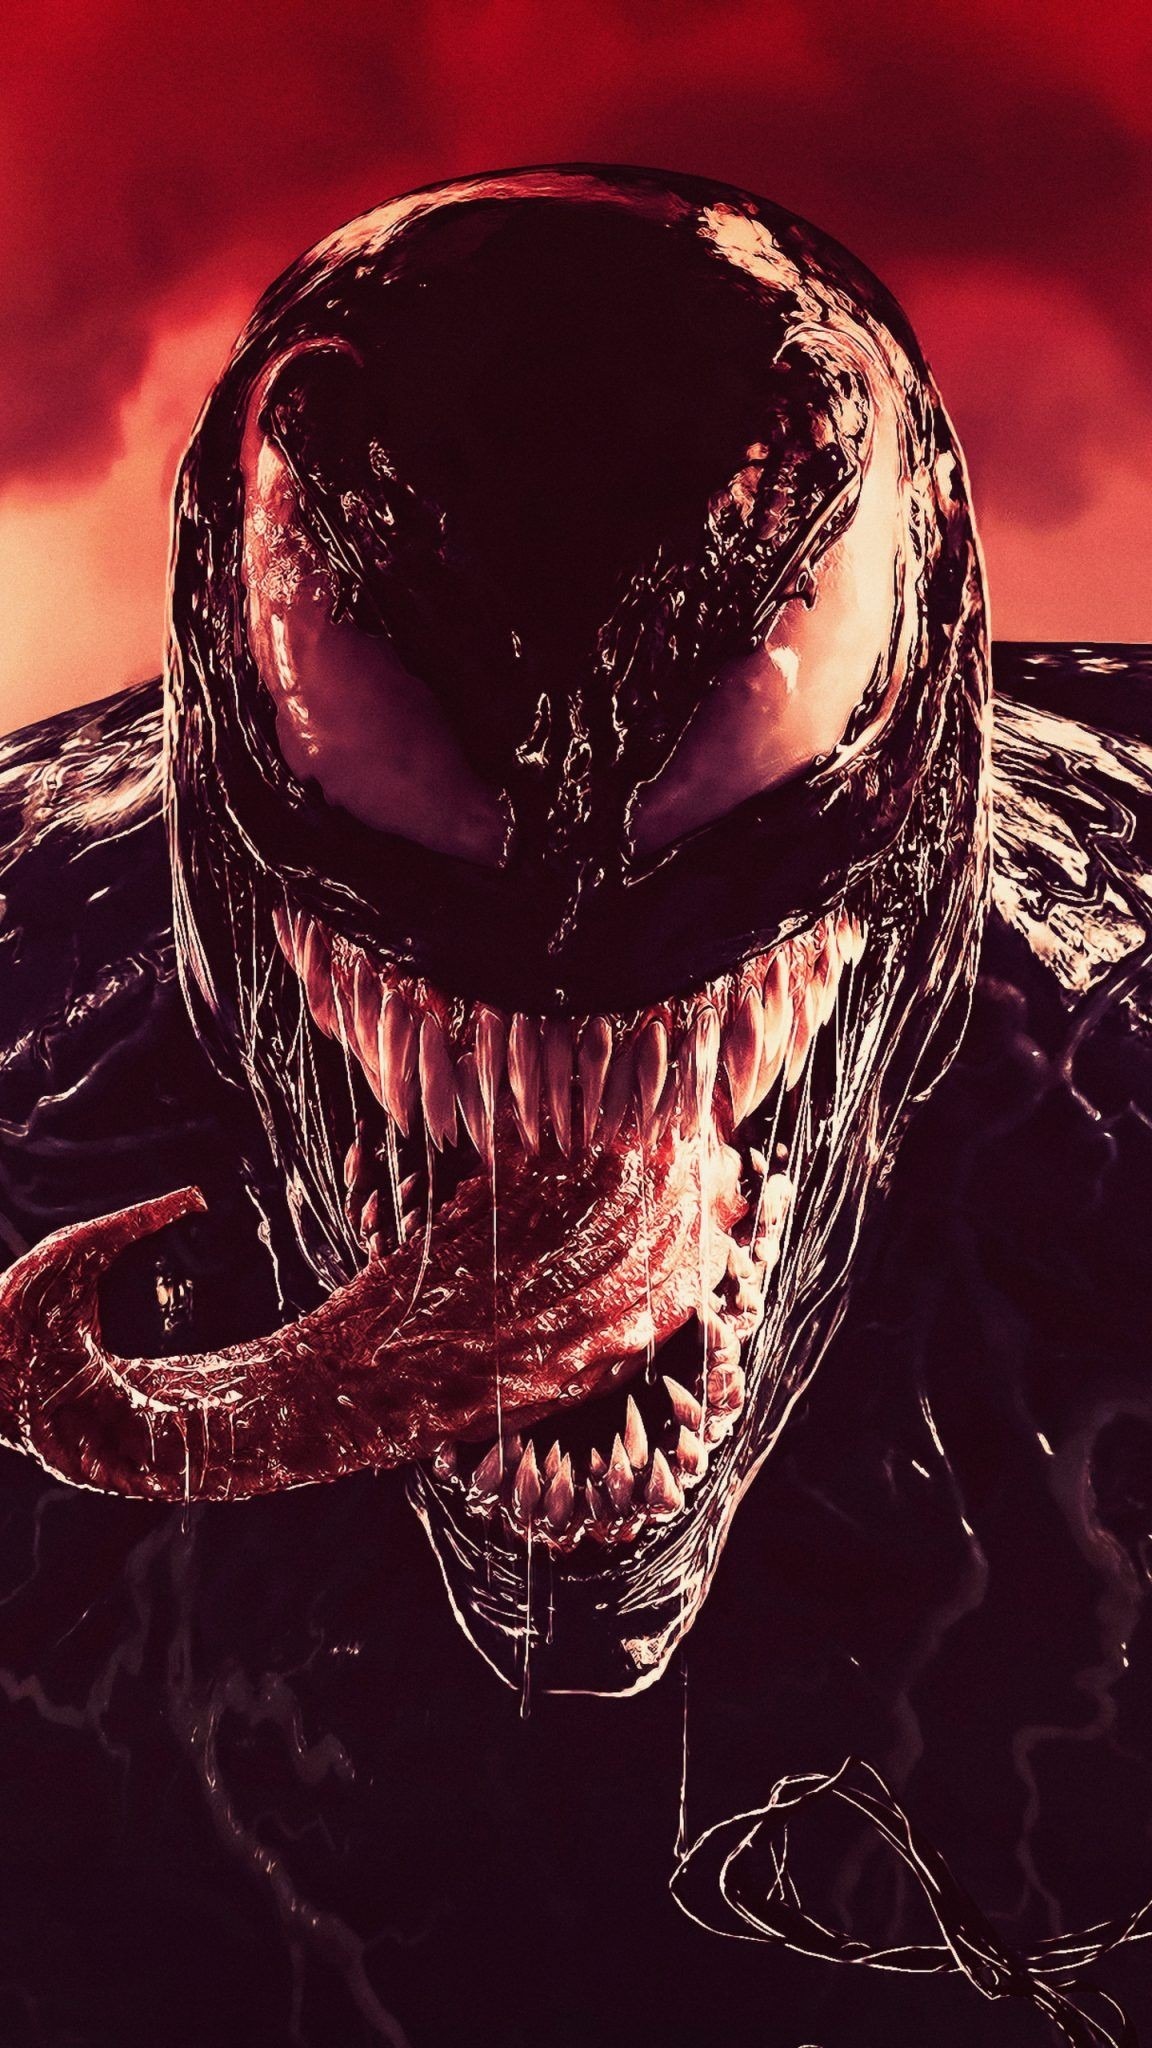 Más de 200 fondos de pantalla de Venom Descargar en imágenes HD de alta calidad